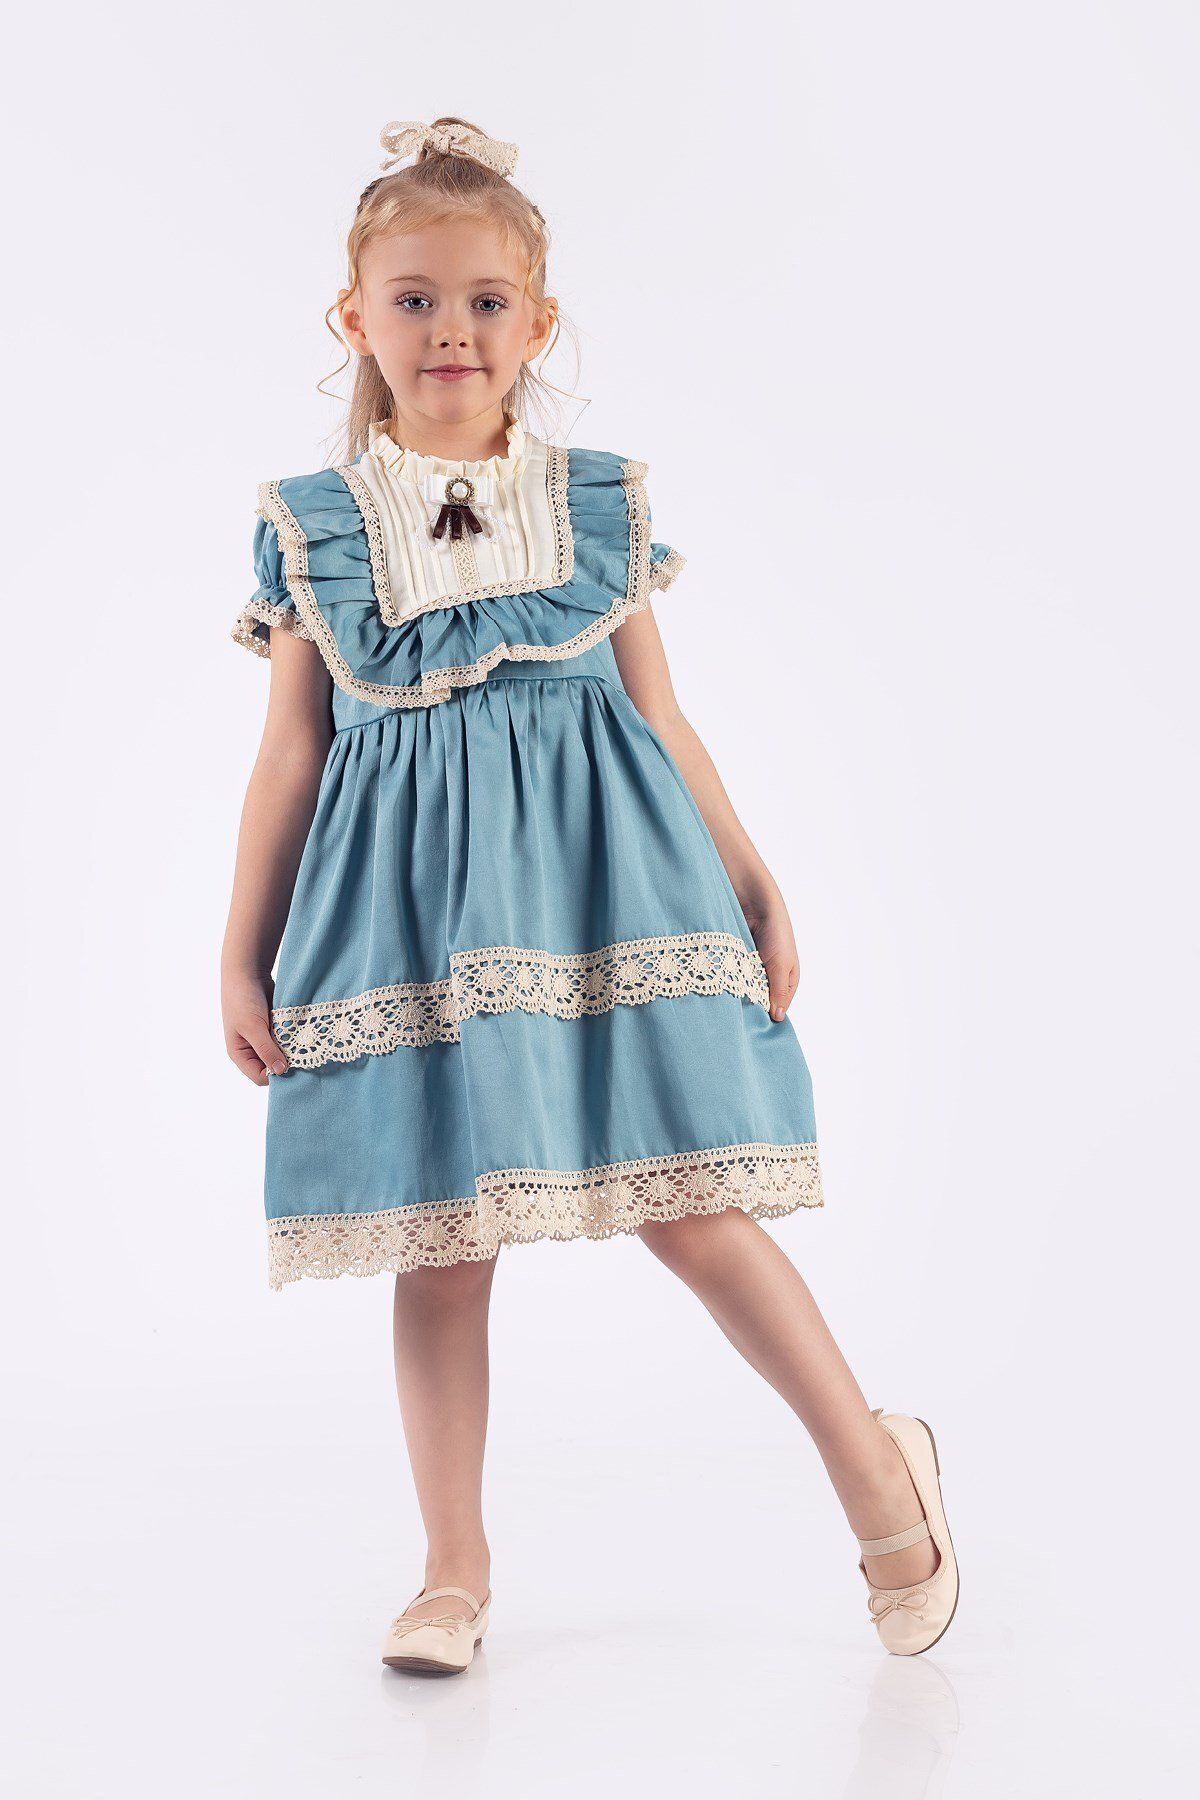 Minik Dolap Dantel Motifli Vintage Kız Çocuk Elbisesi